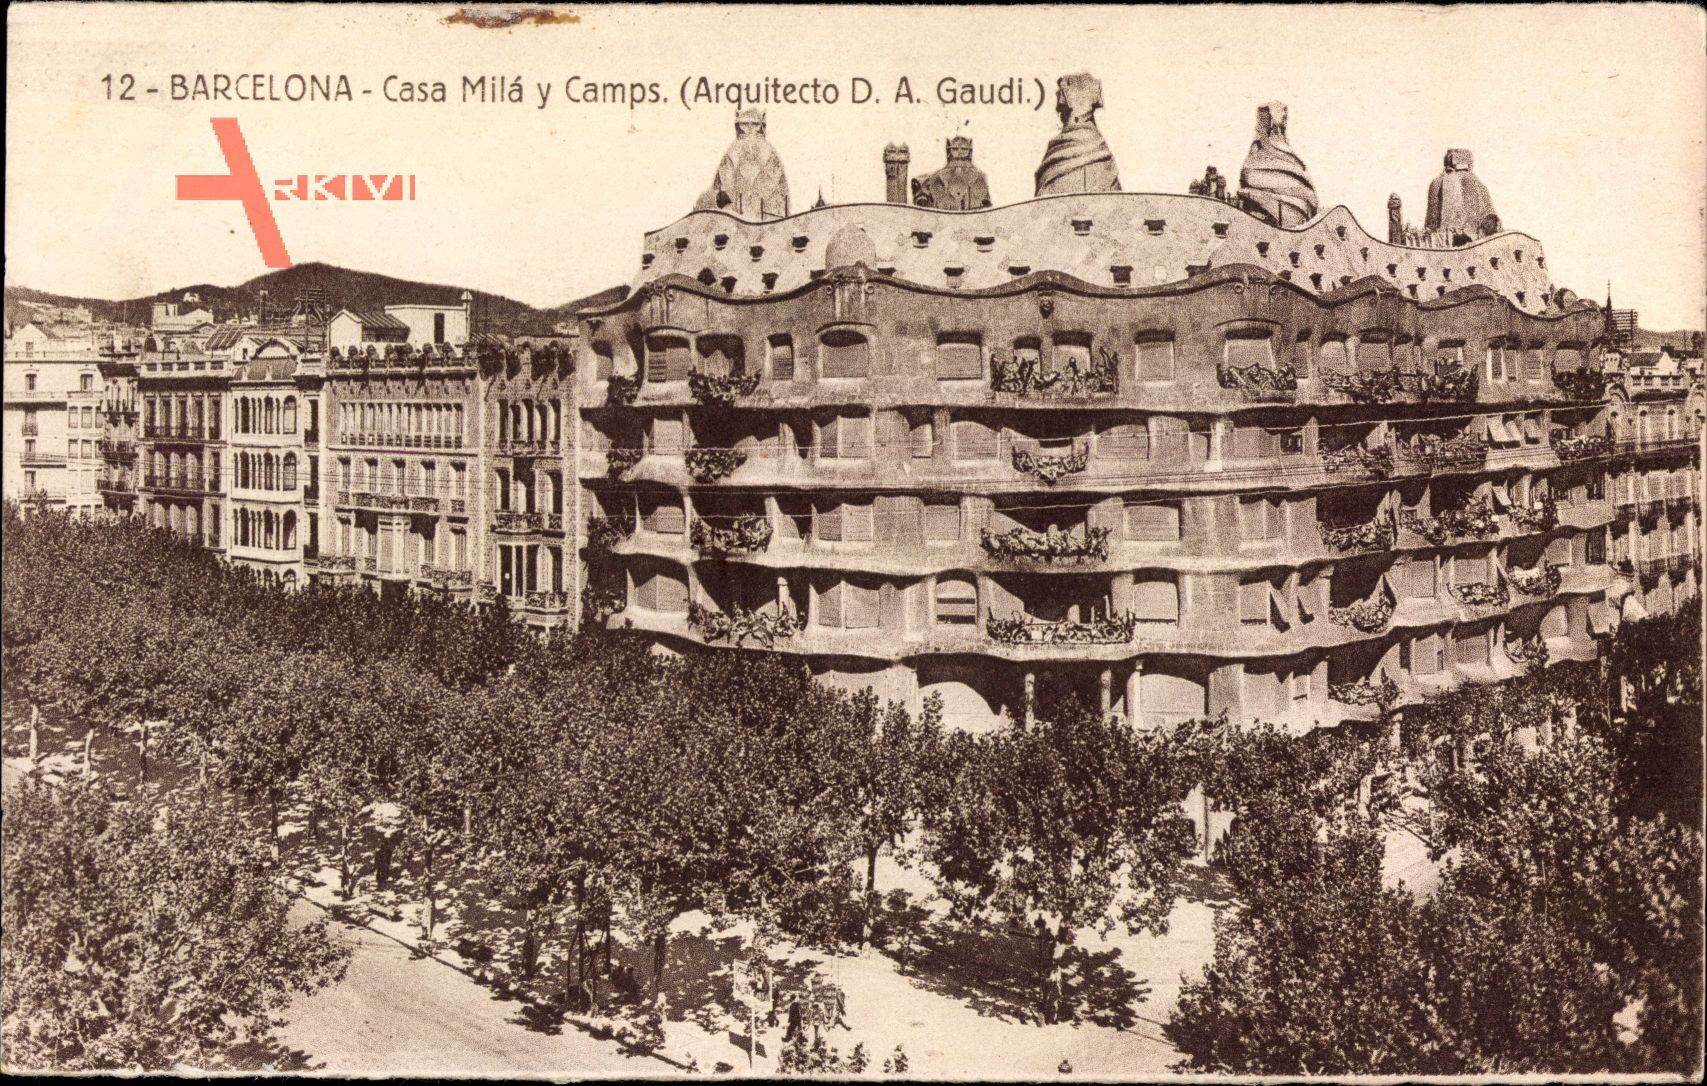 Barcelona Katalonien, Casa Mila y Camps, Arquitecto D.A. Gaudi